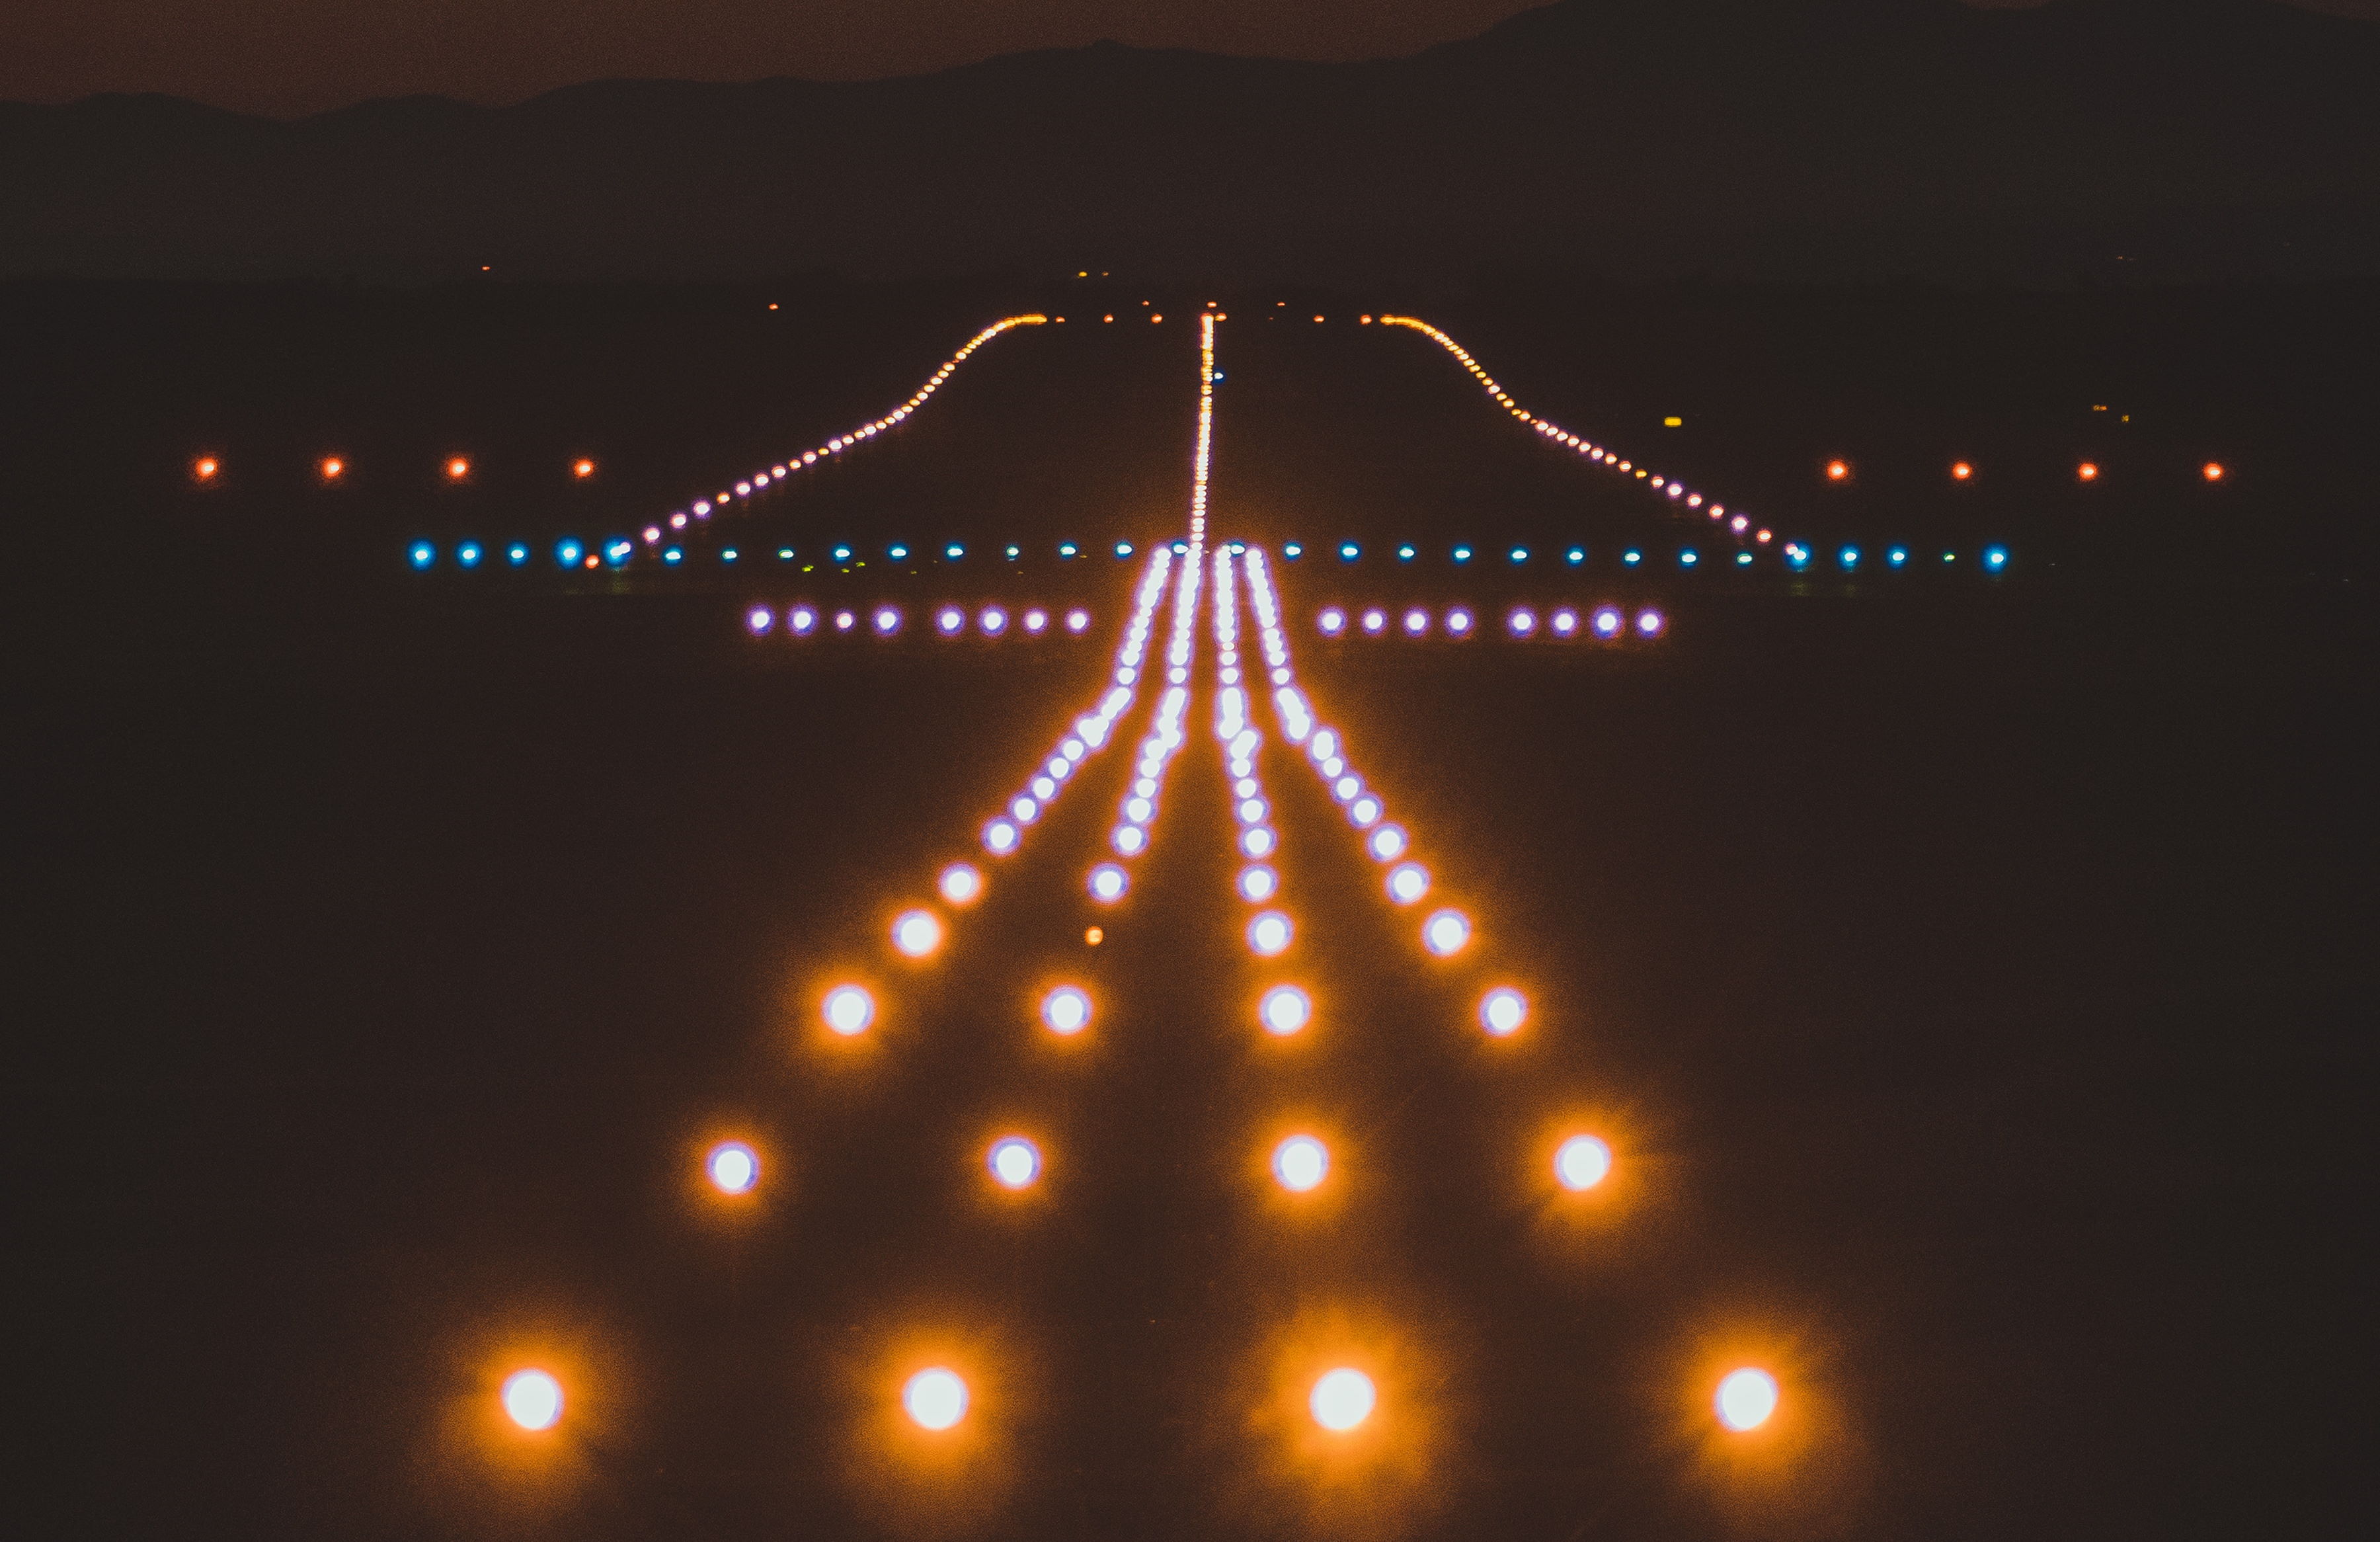 Lit runway